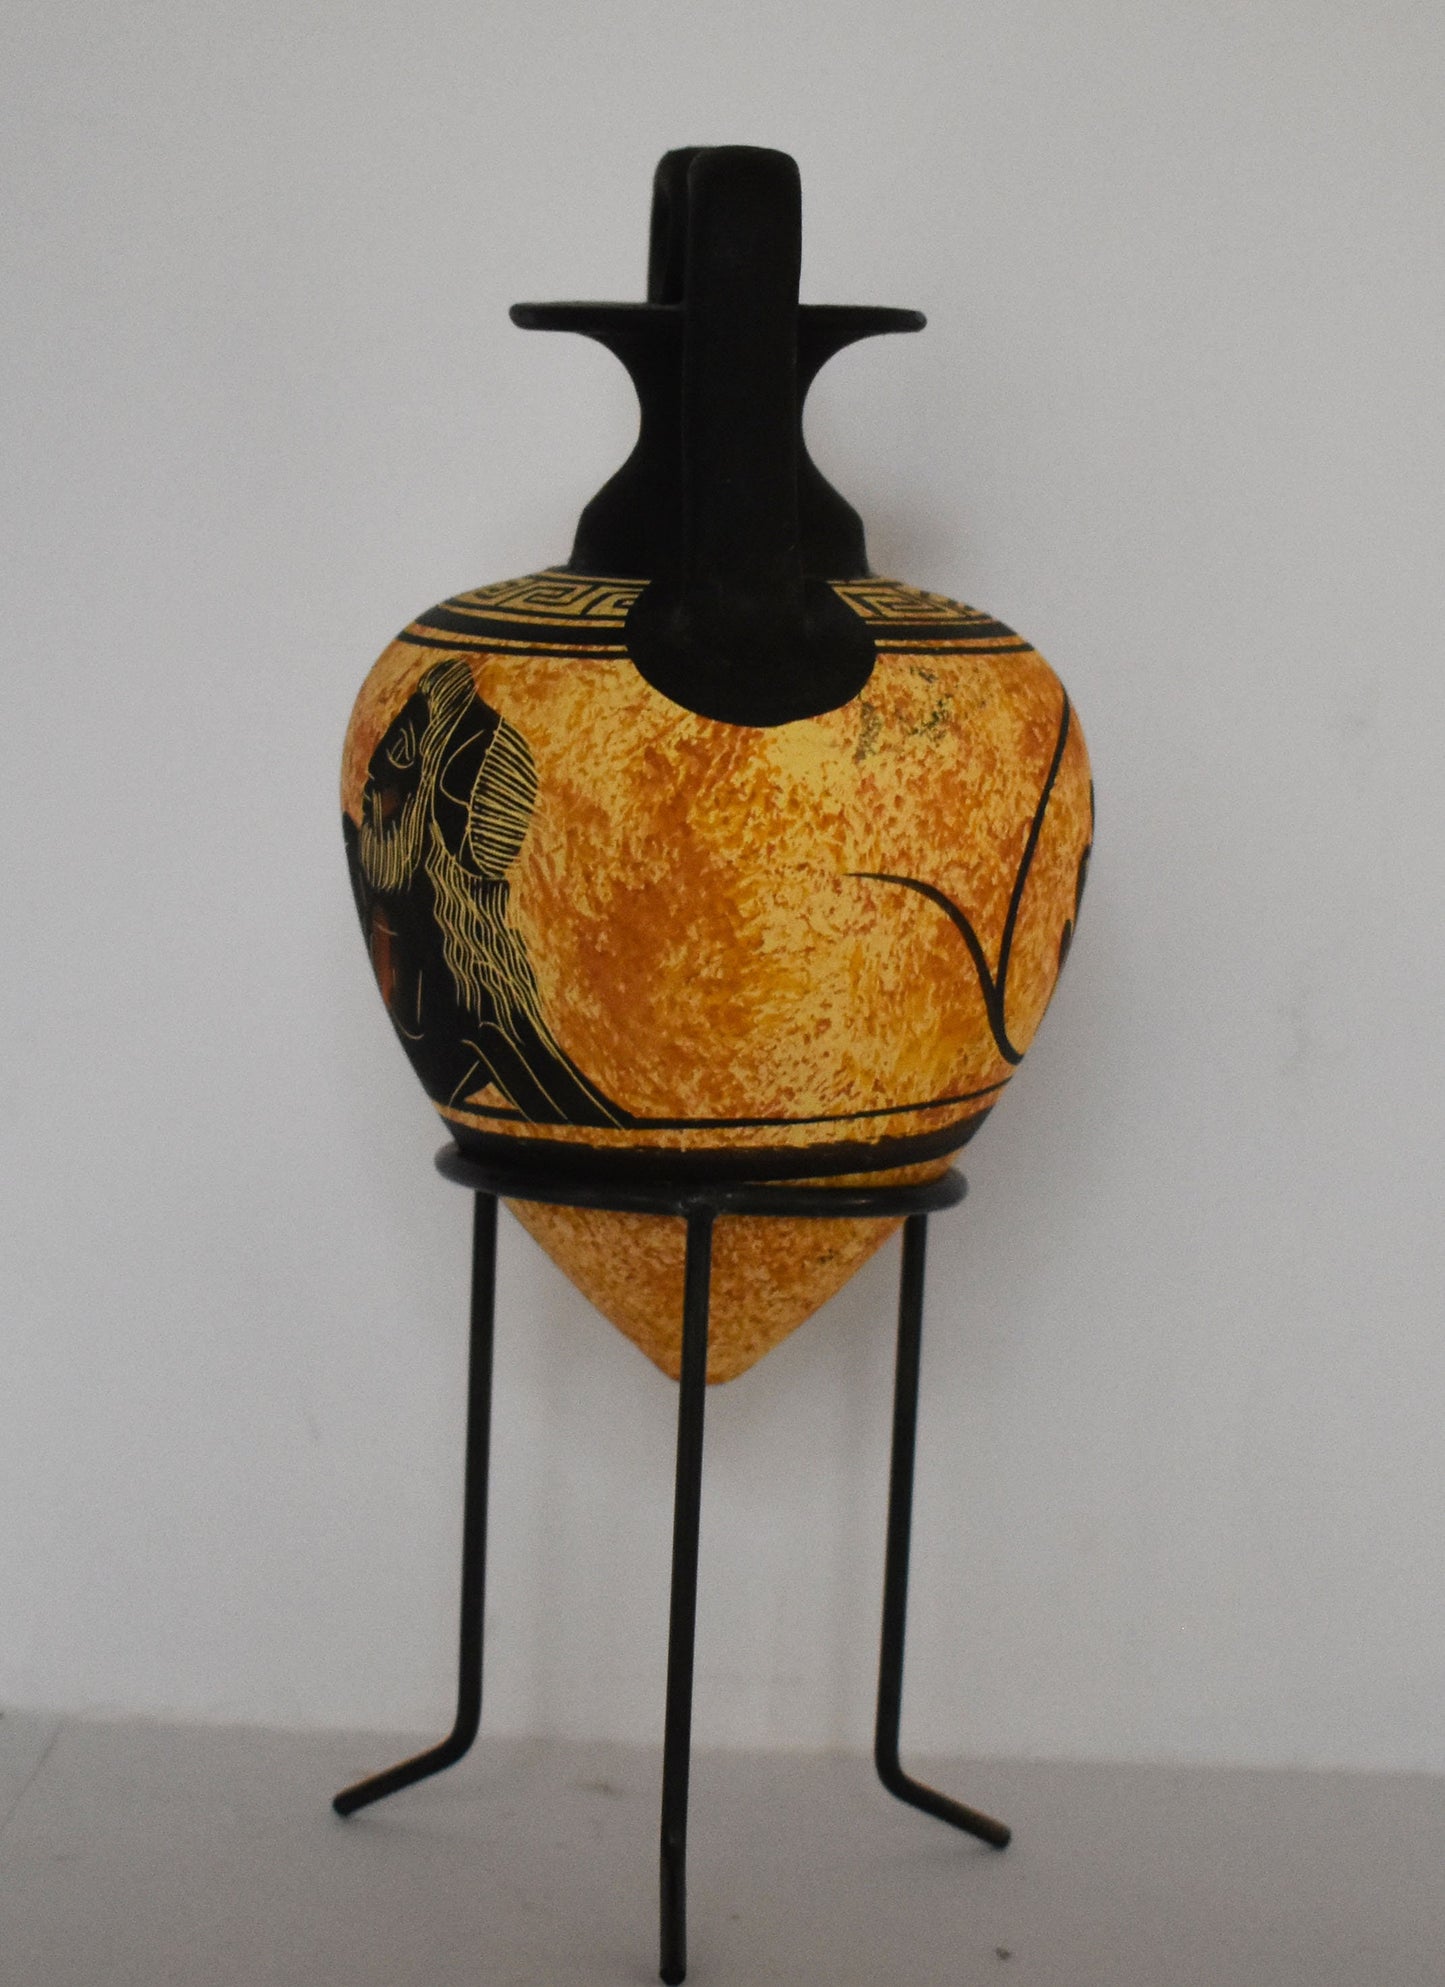 Rhyton - Vessel for Libations or Drinking - Dionysus - God of Vegetation, Wine and Ecstasy. - Floral design - Ceramic Vase